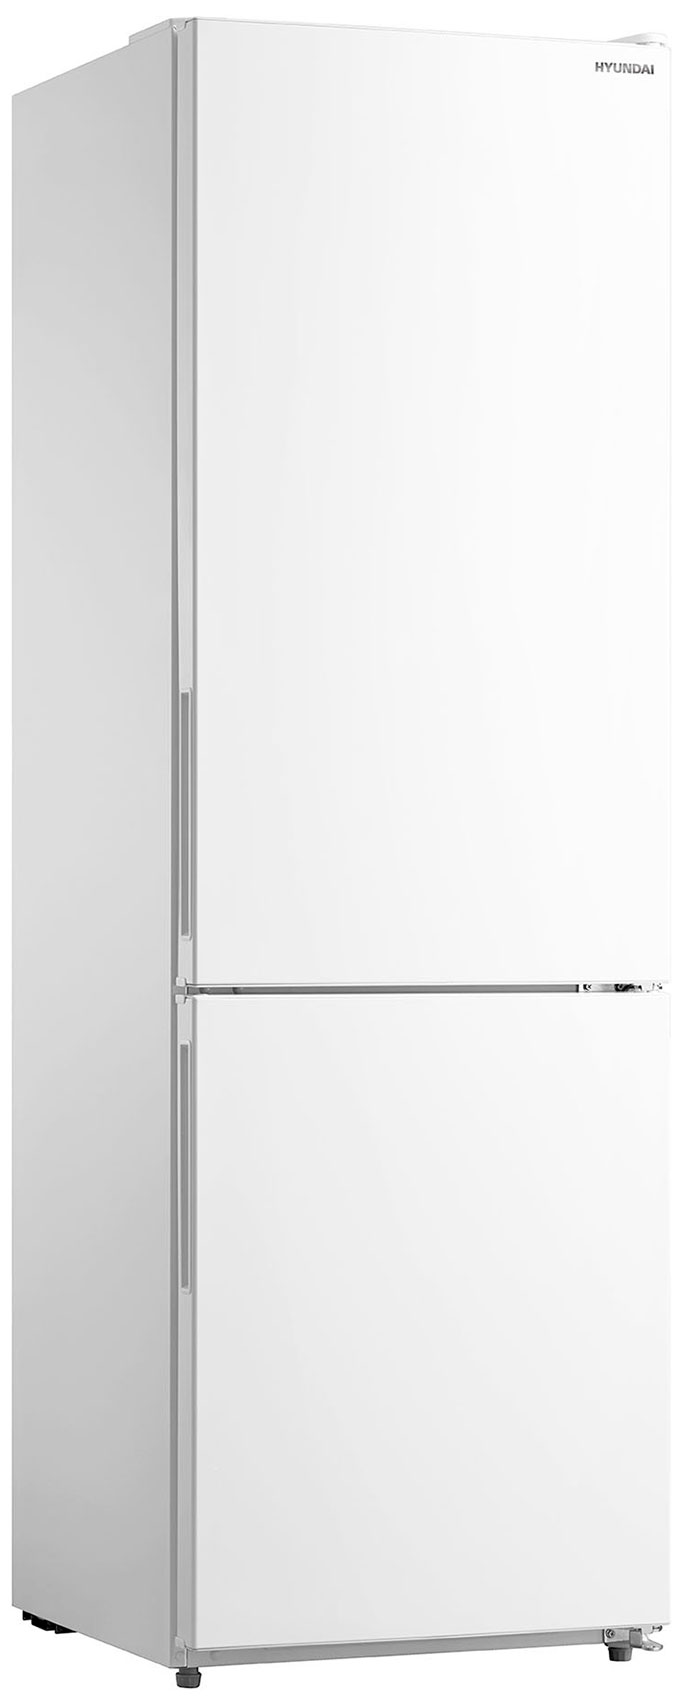 Двухкамерный холодильник Hyundai CC3093FWT белый двухкамерный холодильник hyundai cc3595fwt белый